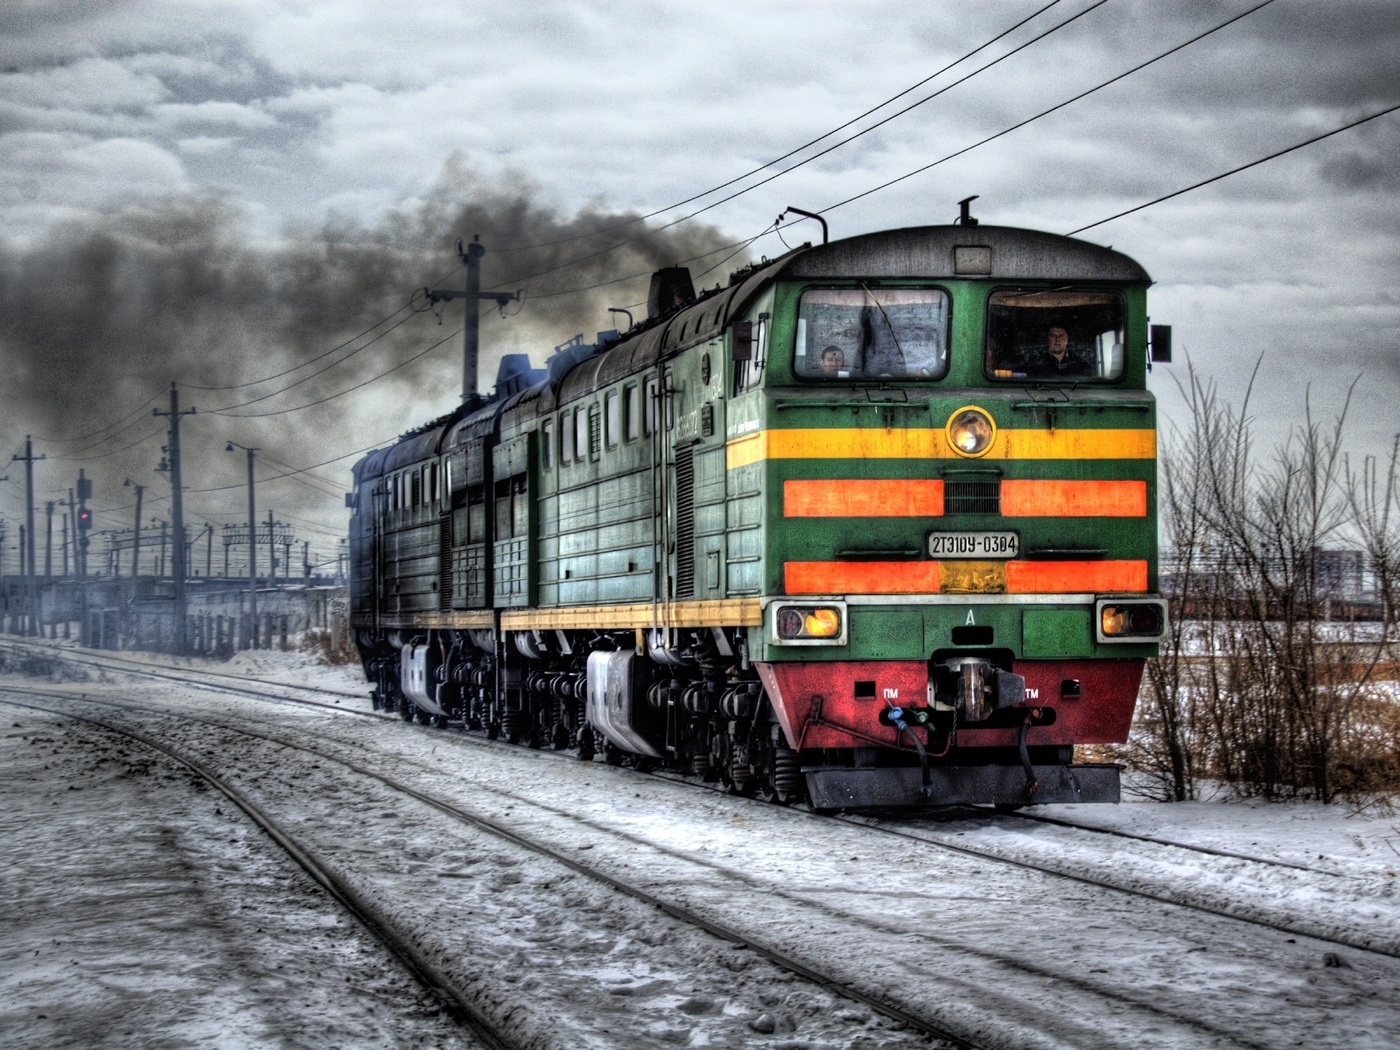 Картинка: Поезд, железная дорога, рельсы, провода, дым, копоть, зима, снег, машинисты